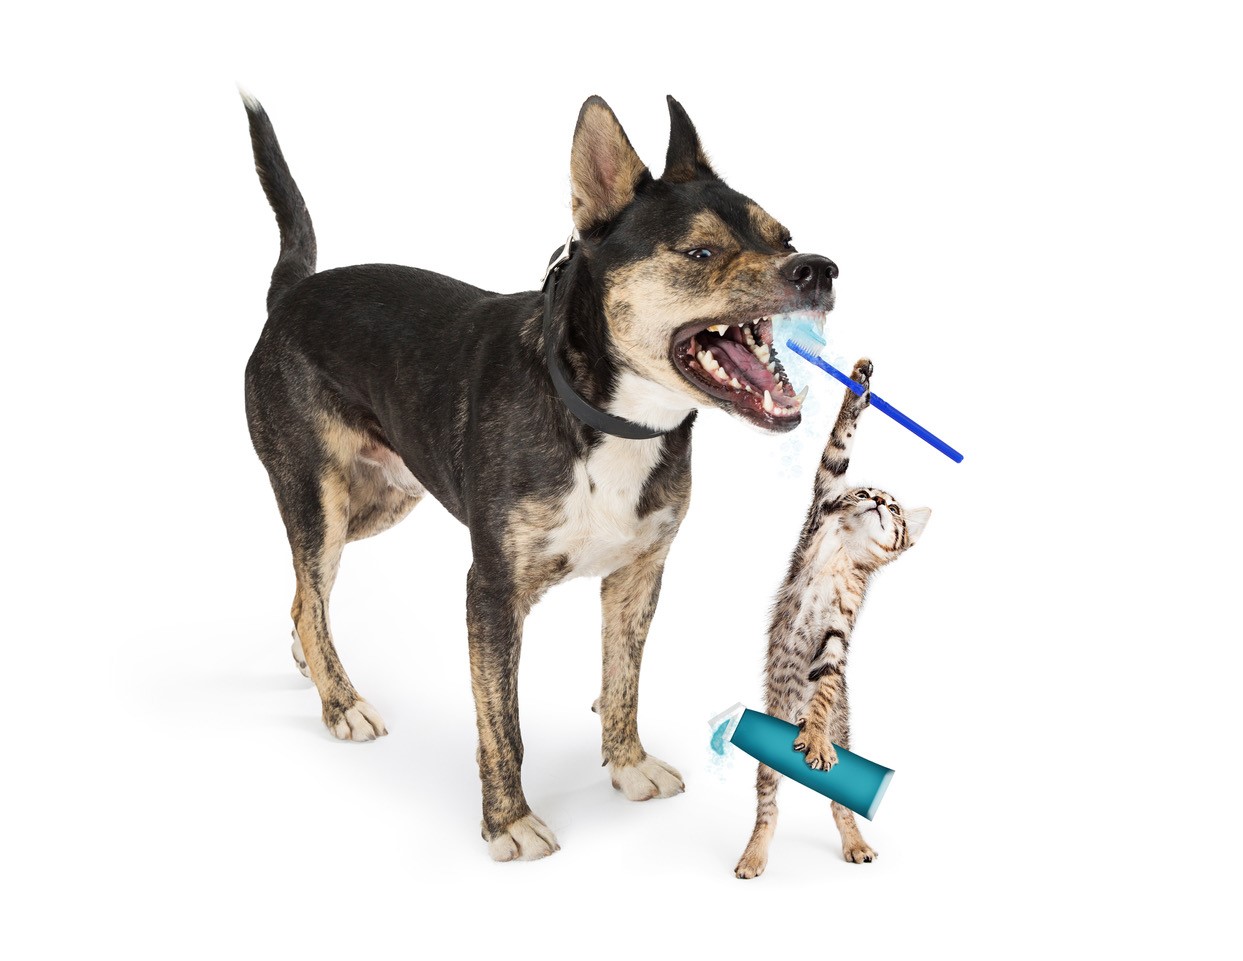 Santé bucco-dentaire du chien : l'importance d'une hygiène